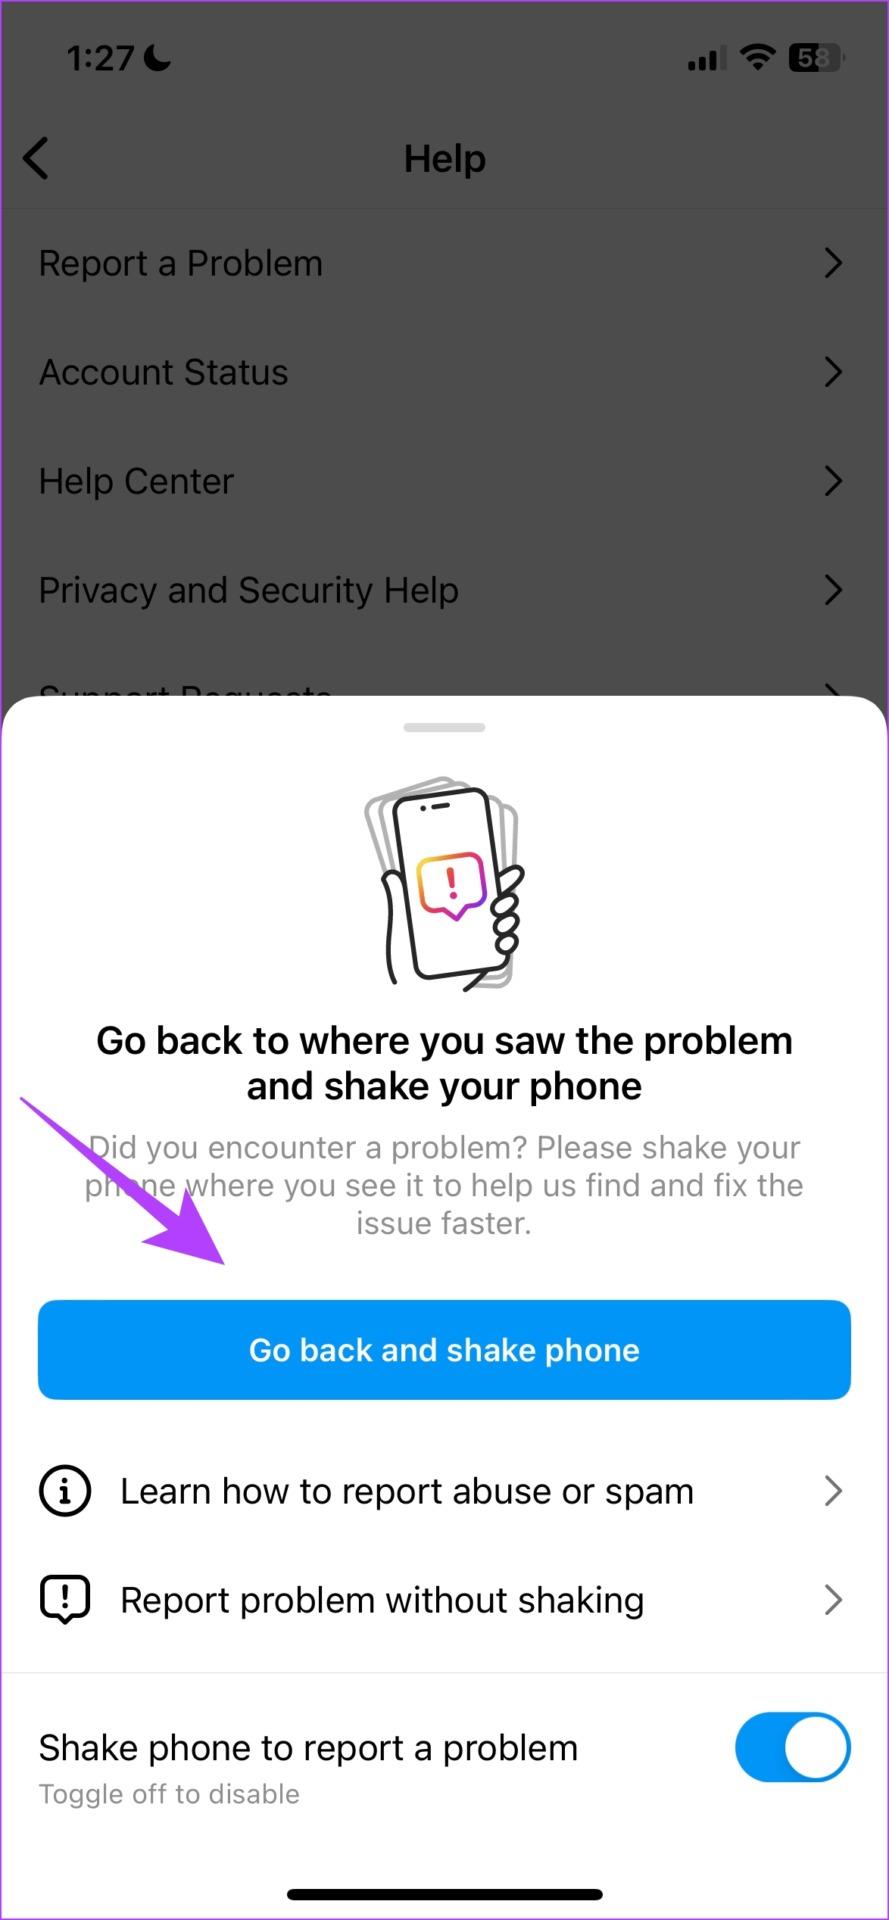 13 طريقة لإصلاح عدم تحميل قصة Instagram على iPhone وAndroid